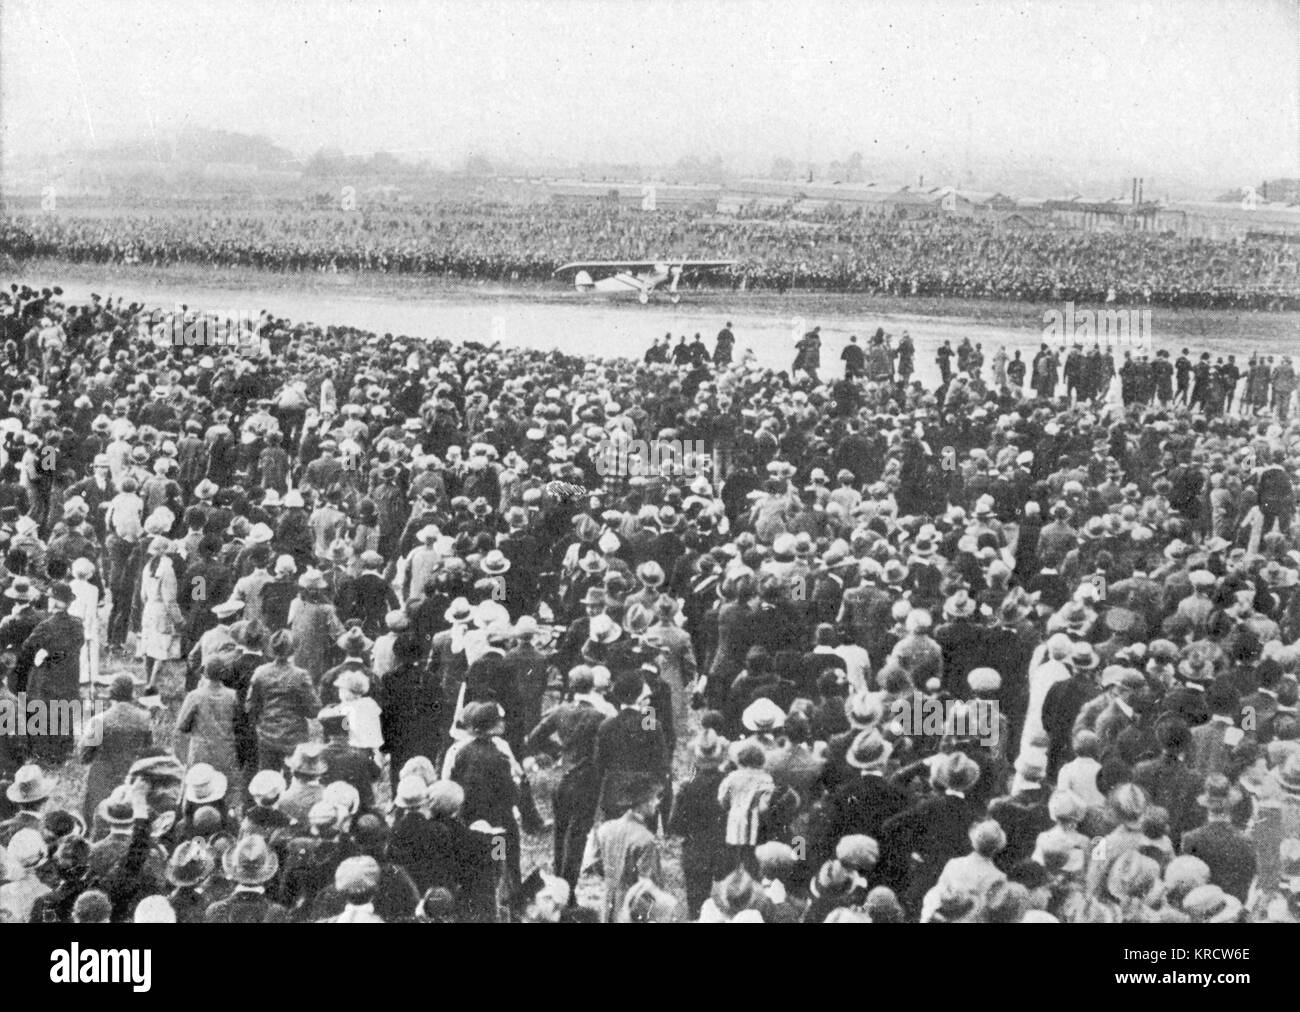 Des milliers de personnes se retrouvent pour accueillir Charles Lindbergh et 'l'esprit de Saint Louis" à Croydon, Londres. Date : 1927 Banque D'Images